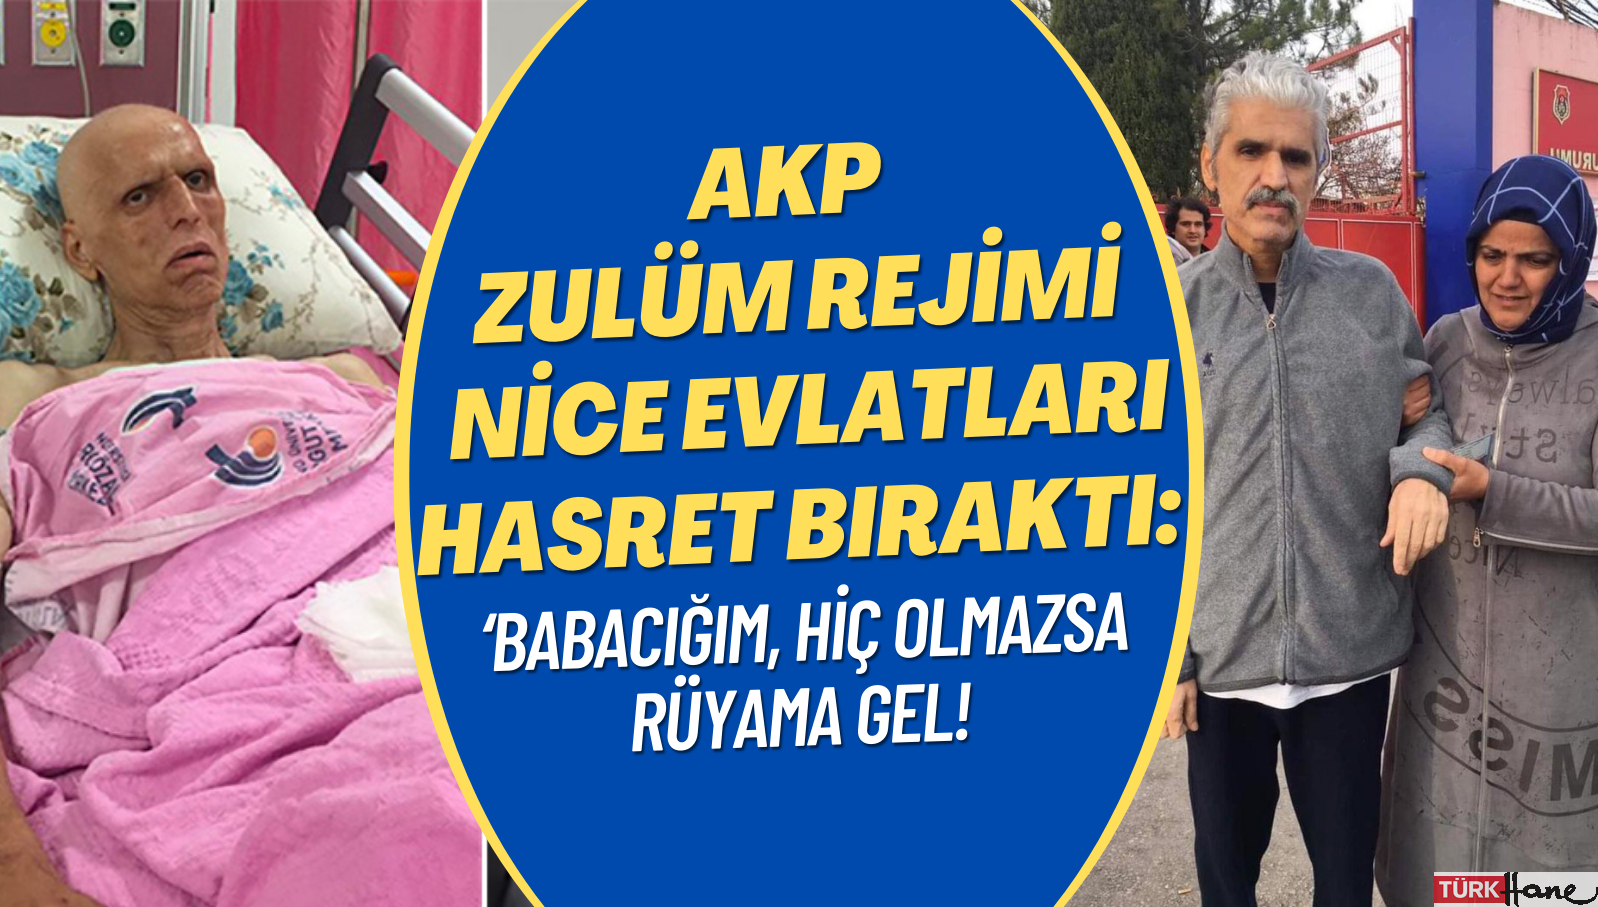 AKP zulüm rejimi nice evlatları hasret bıraktı: ‘Babacığım, hiç olmazsa rüyama gel!